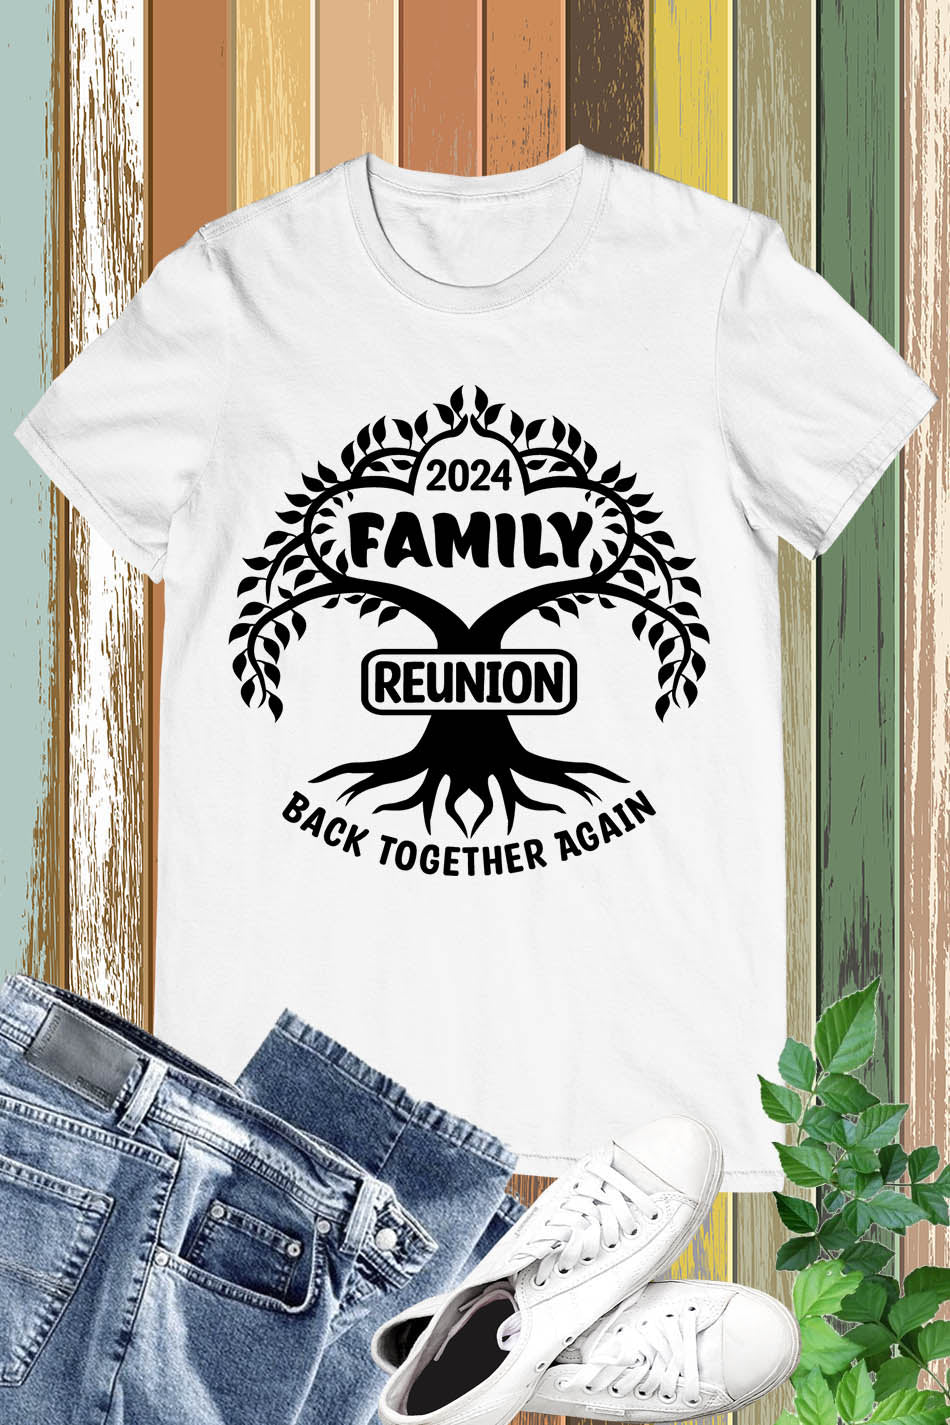 Matching Family Reunion 2024 T Shirts